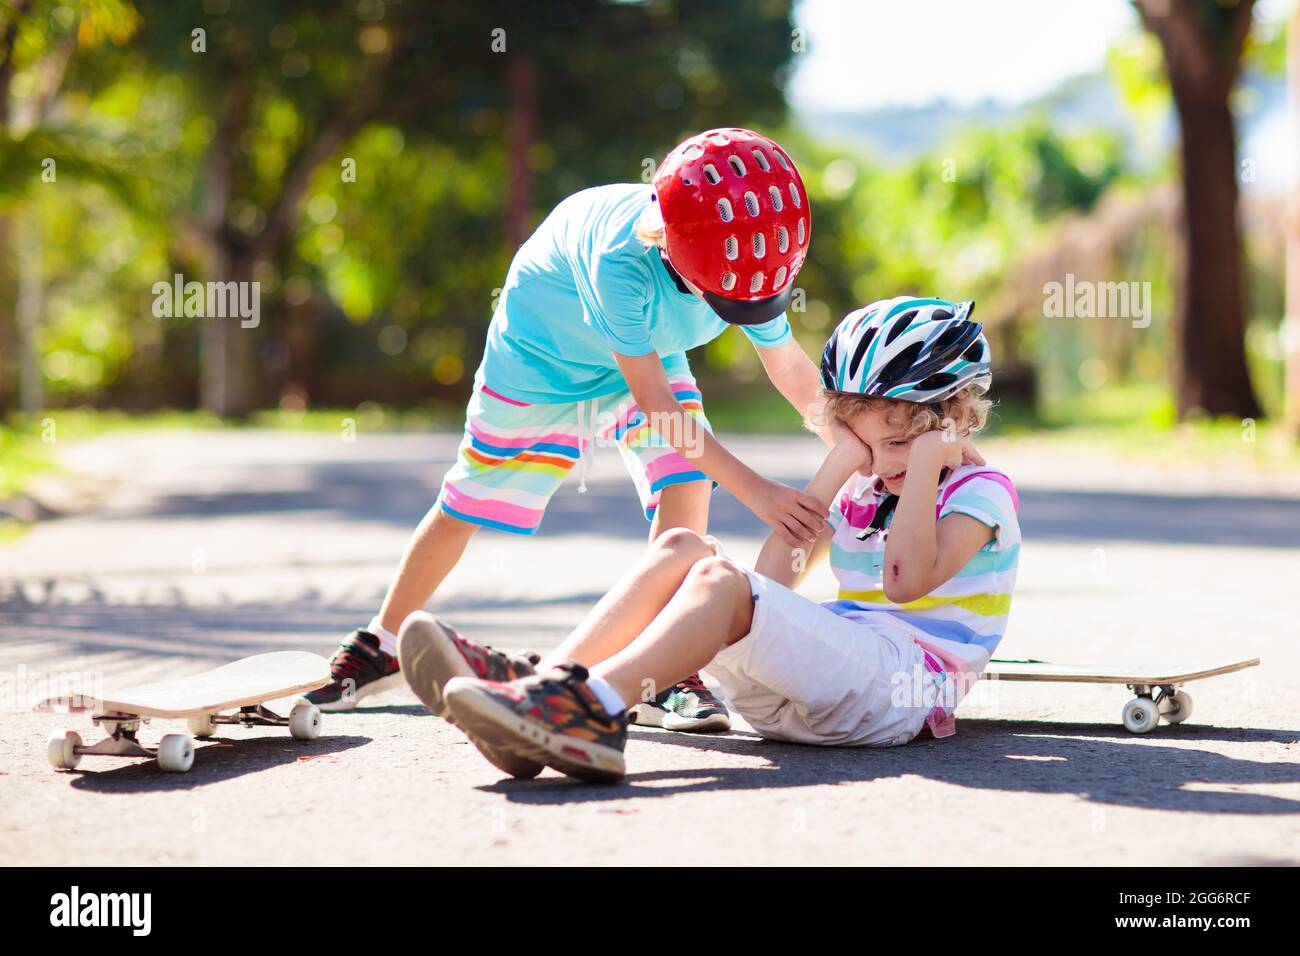 Skateboard injury immagini e fotografie stock ad alta risoluzione - Alamy